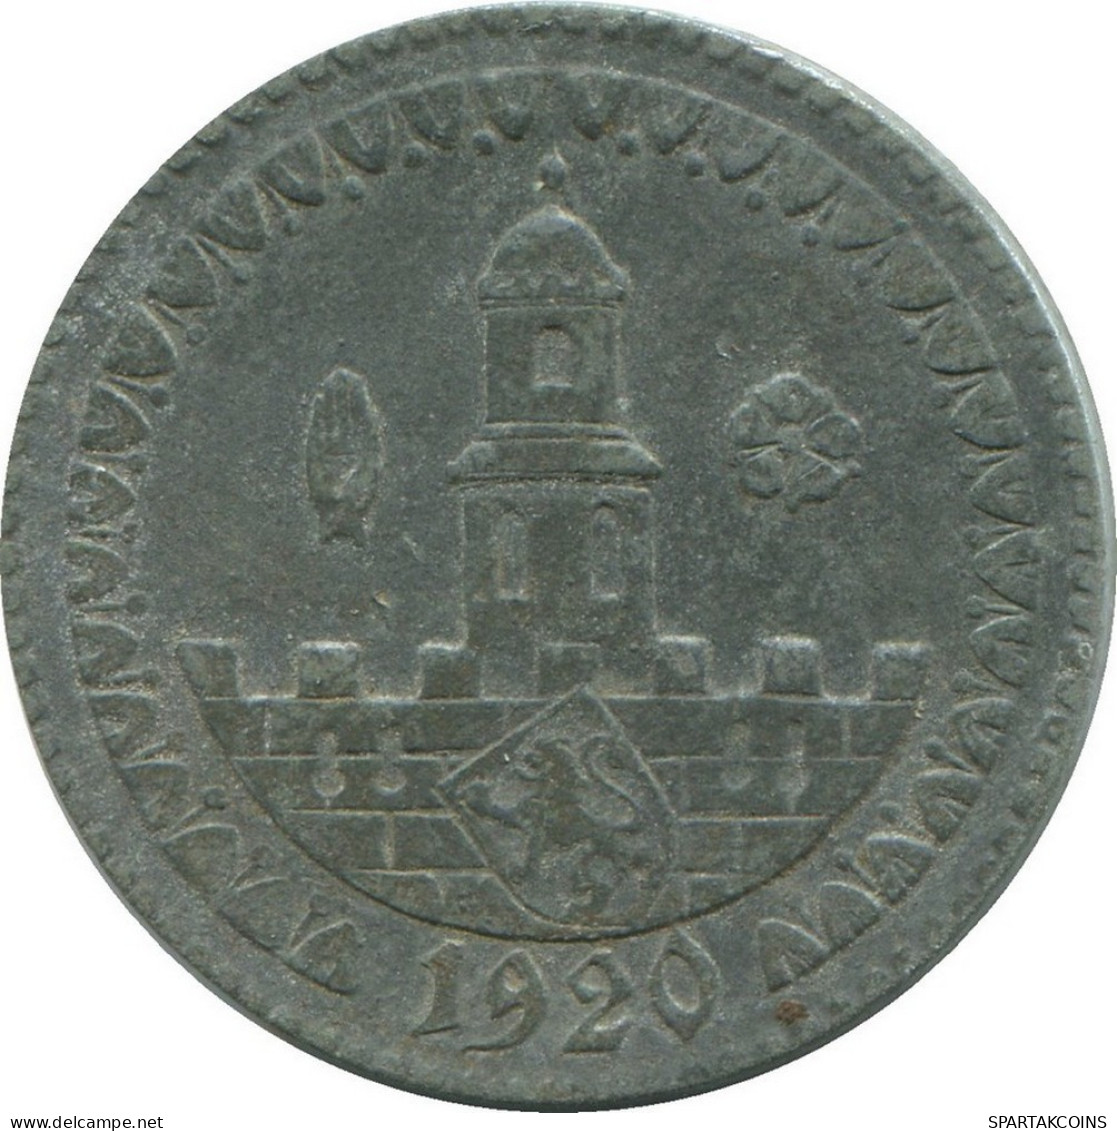 50 PFENNIG 1920 ALTENBURG GERMANY Coin #DE10518.6.U.A - 50 Rentenpfennig & 50 Reichspfennig